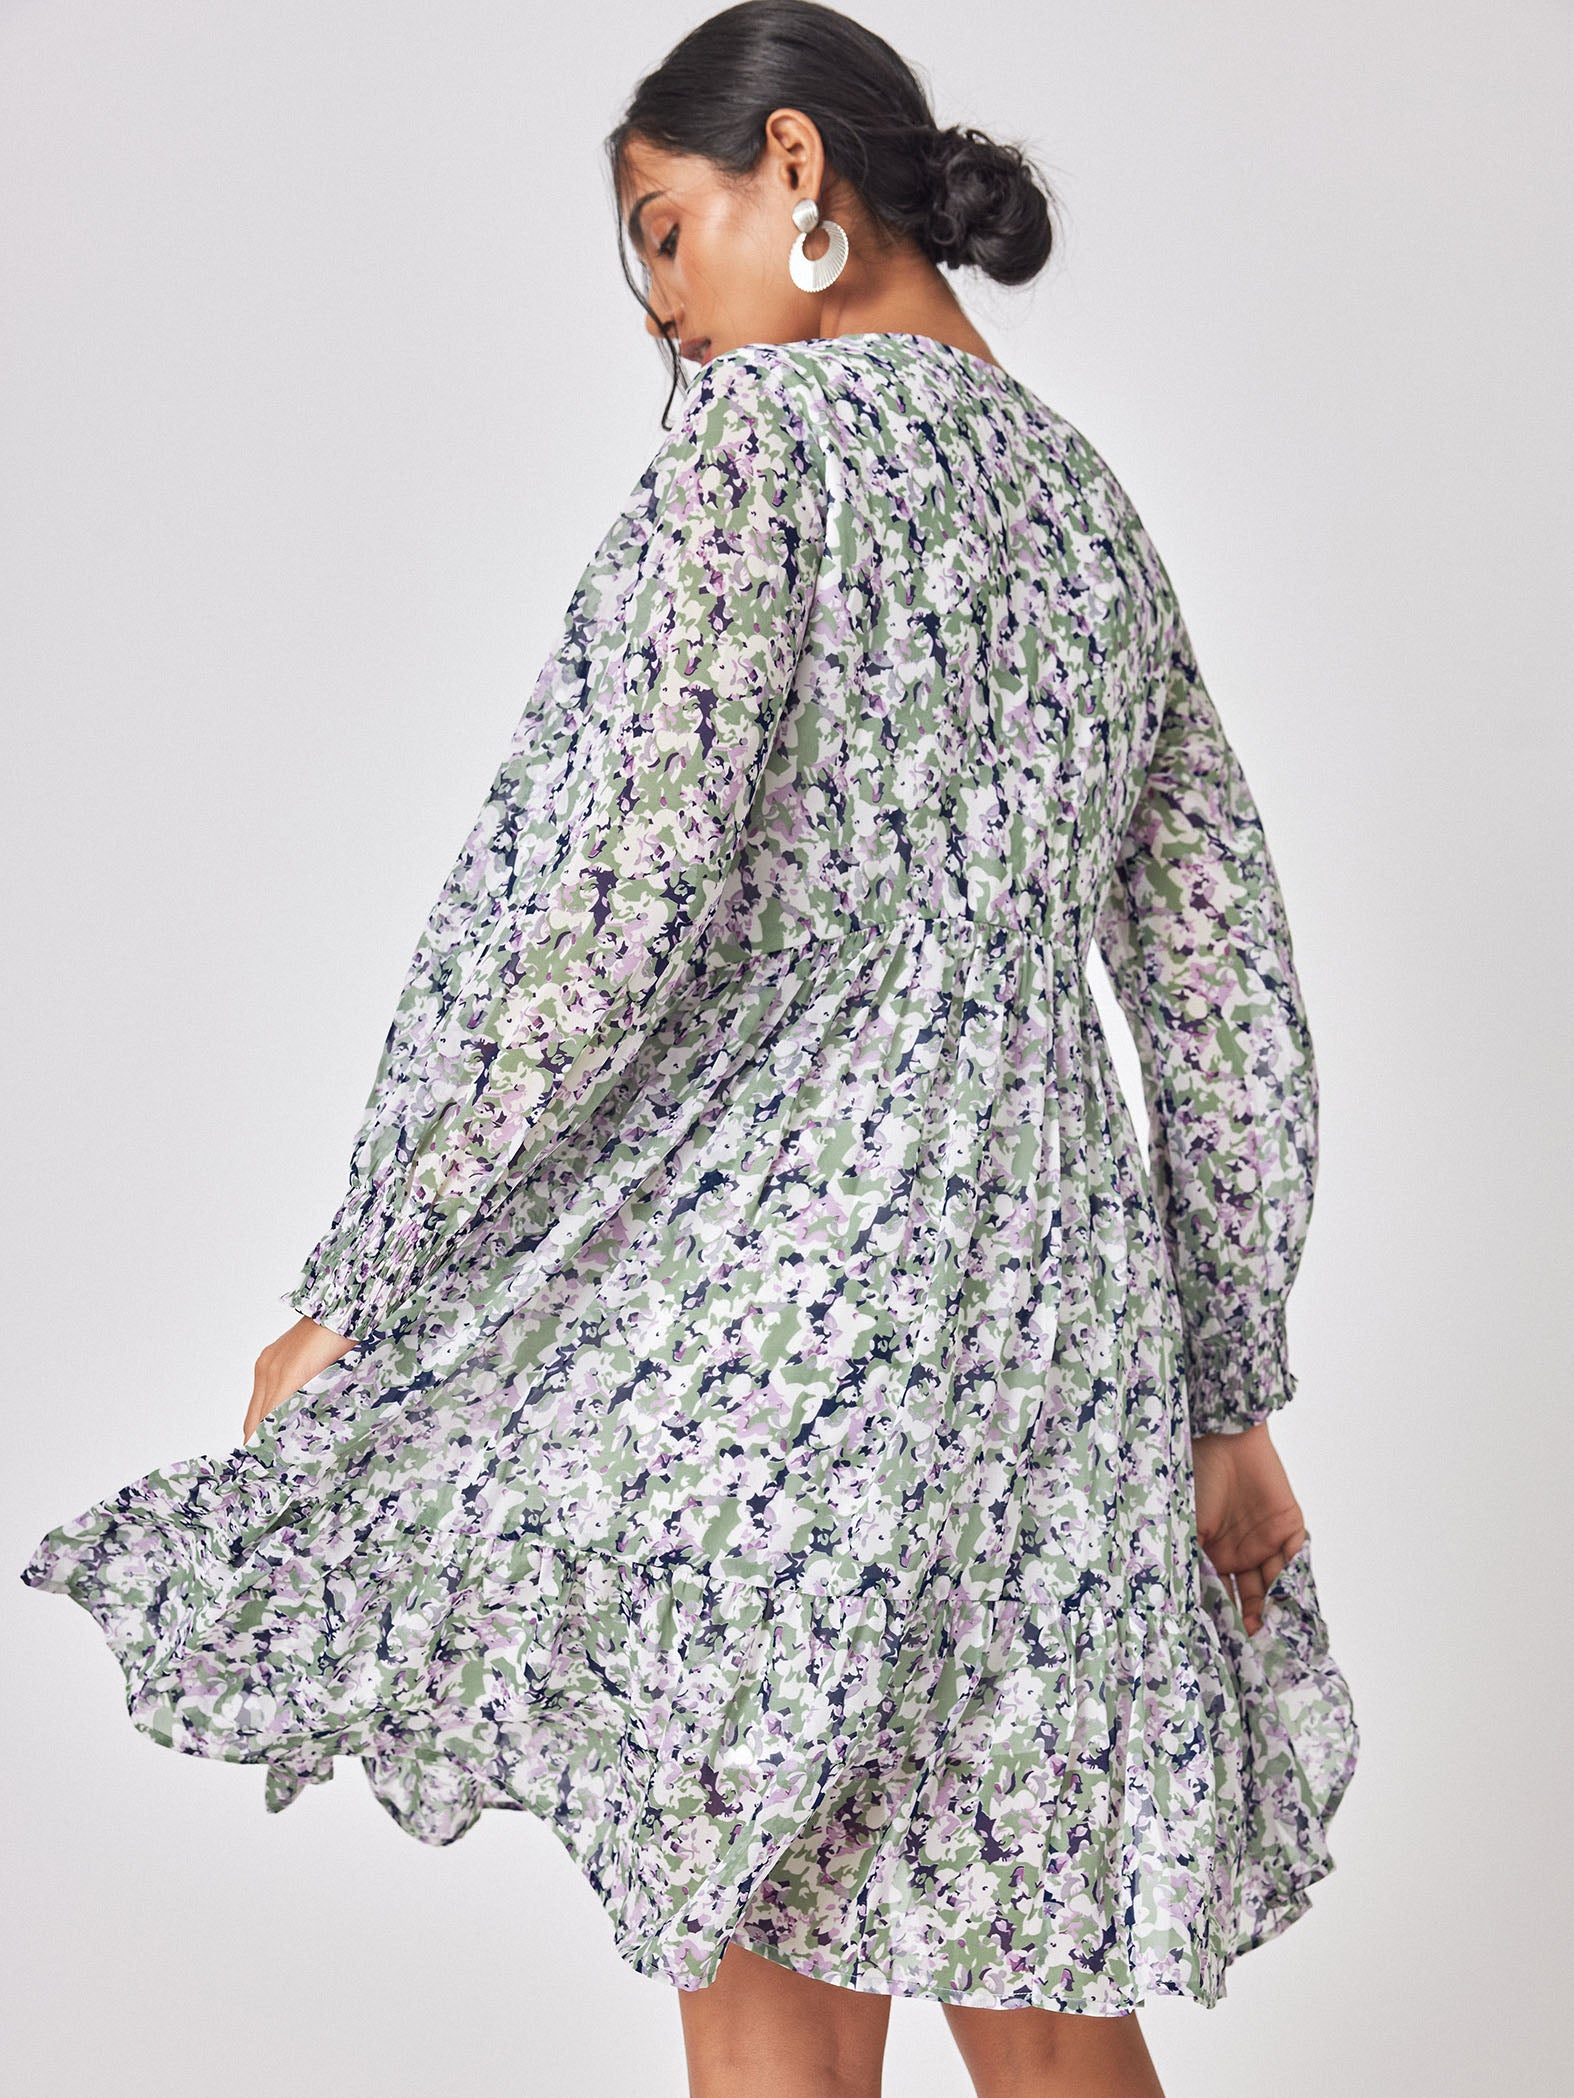 Abstract Floral Print Drop Waist Dress